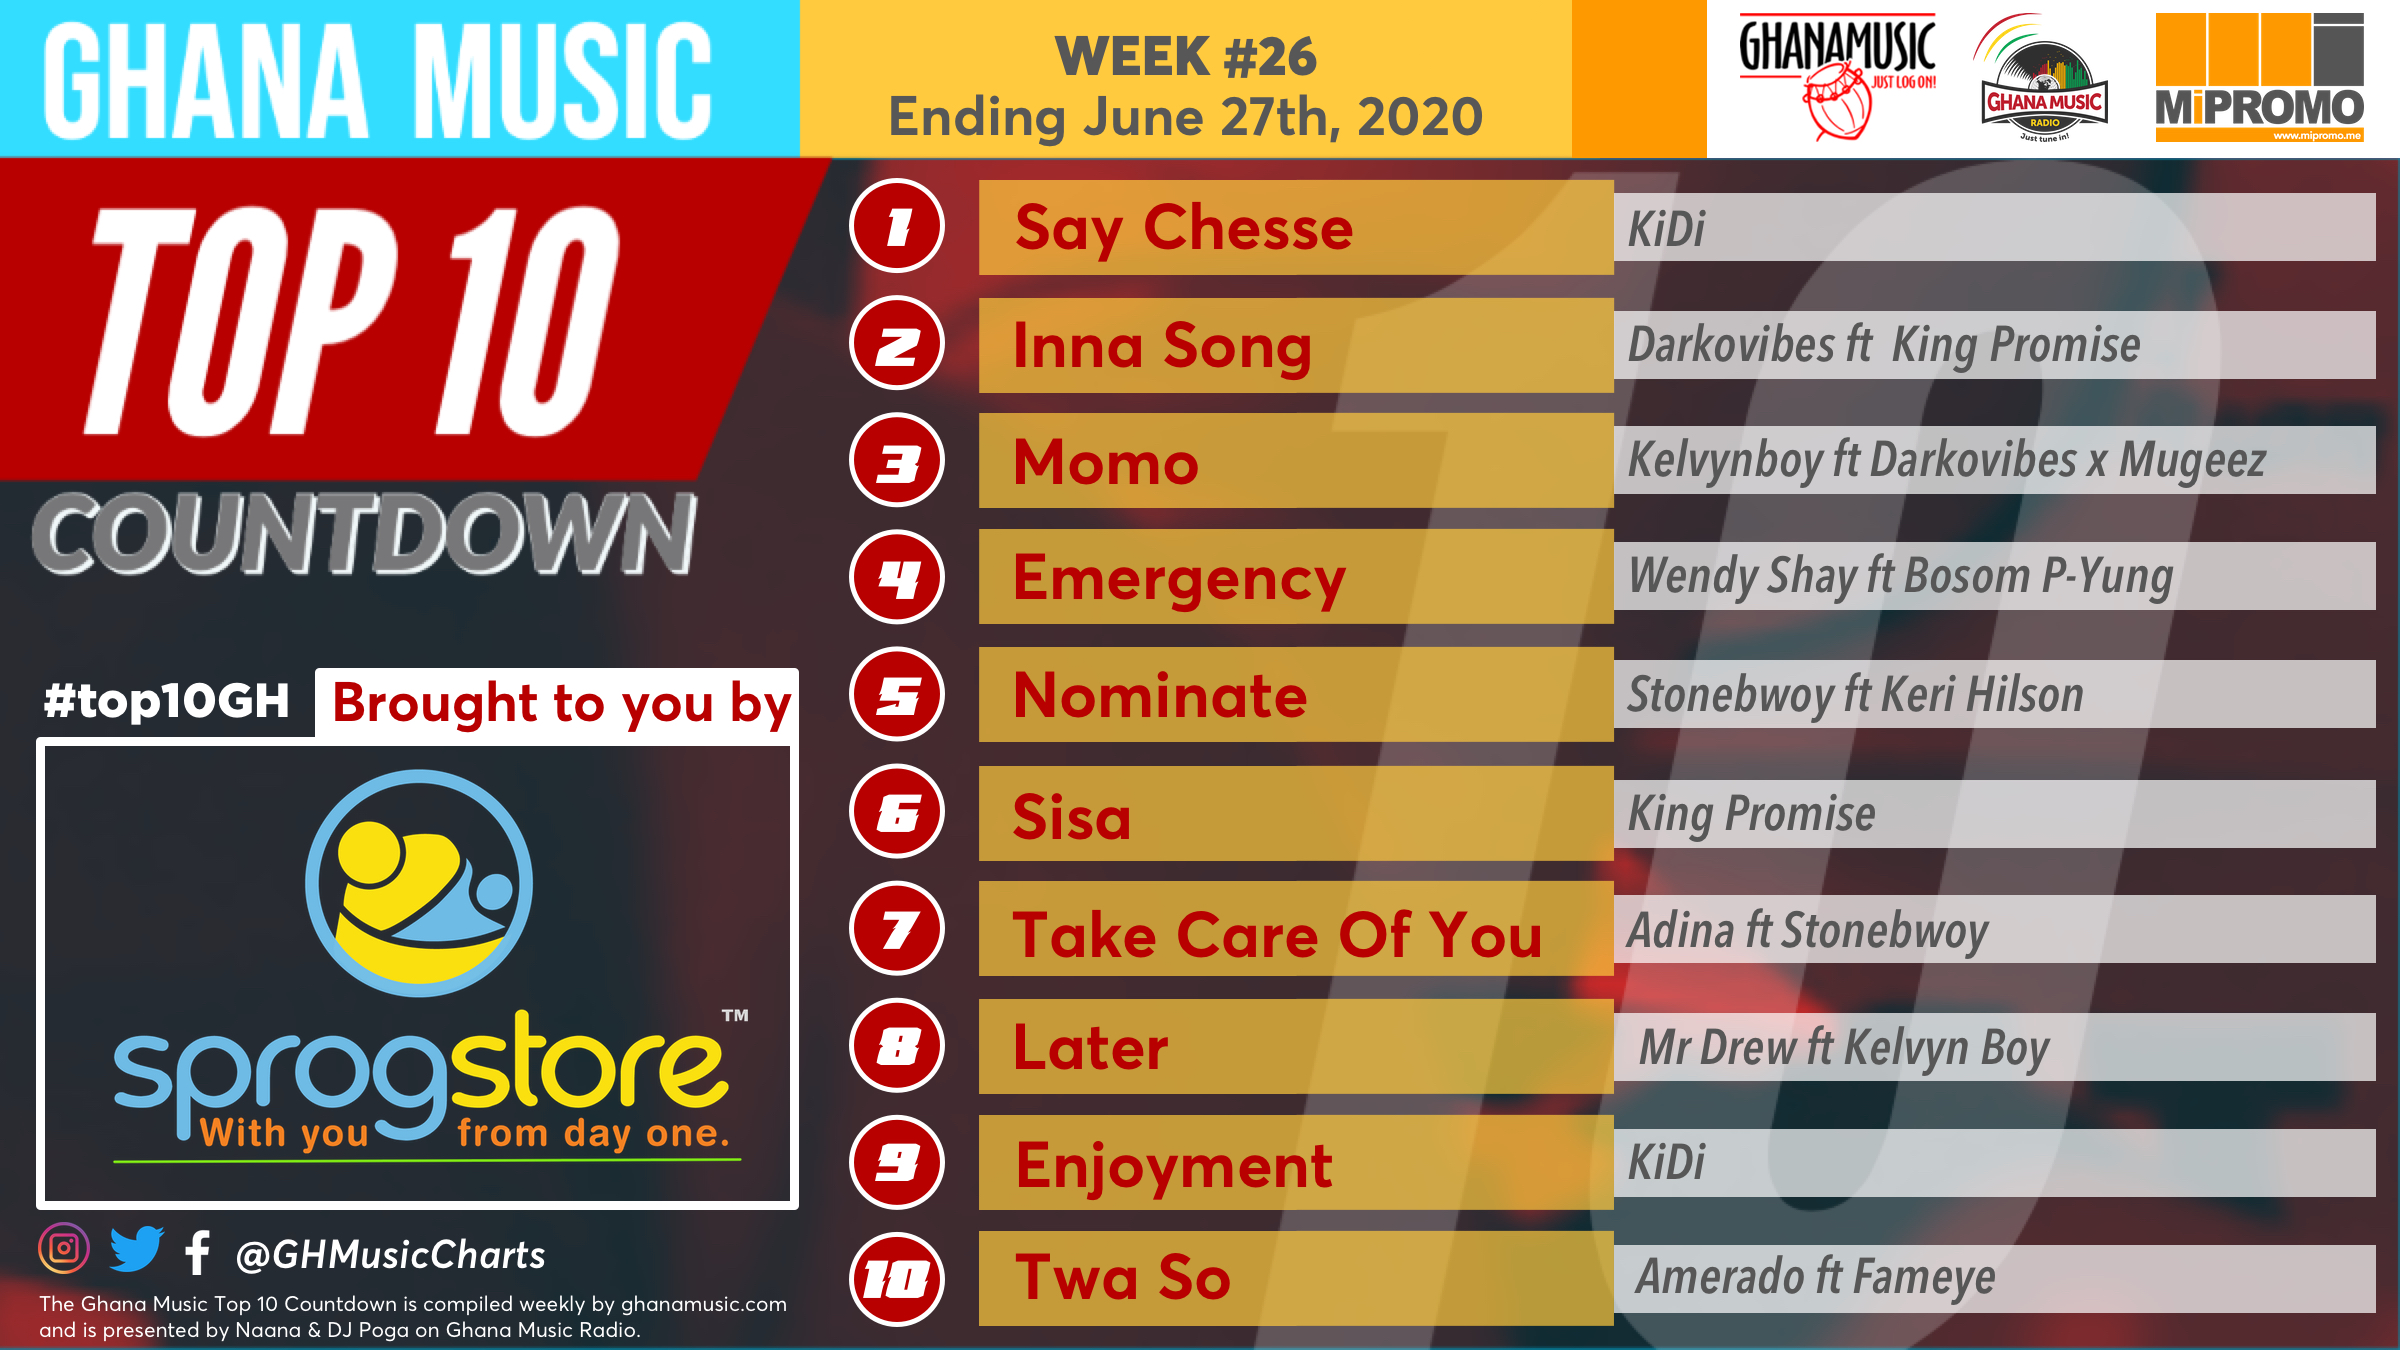 2020 Week 26: Ghana Music Top 10 Countdown